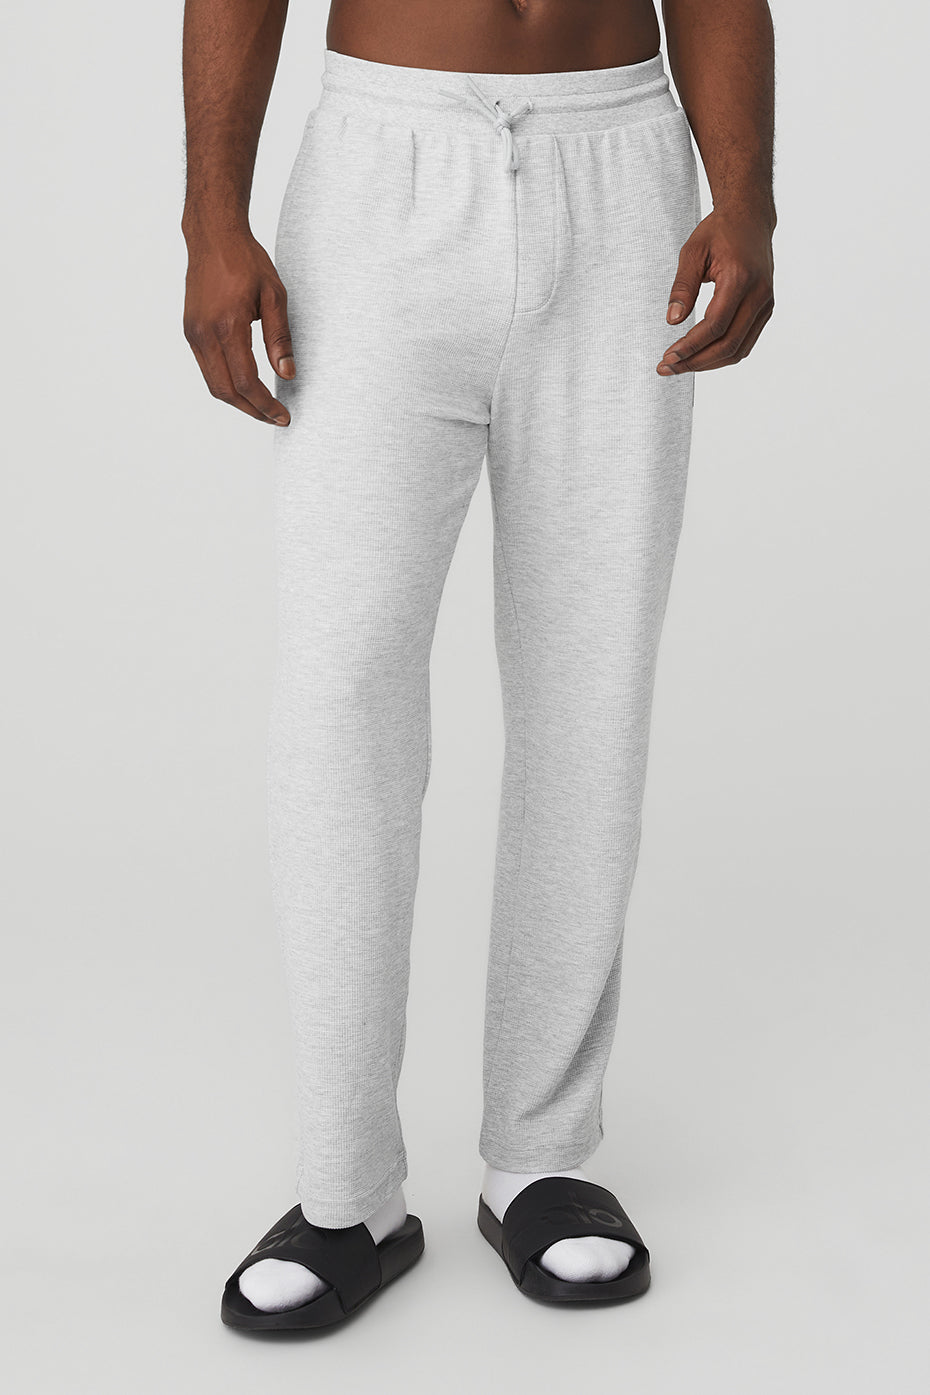 Gray Sweatpants for Men